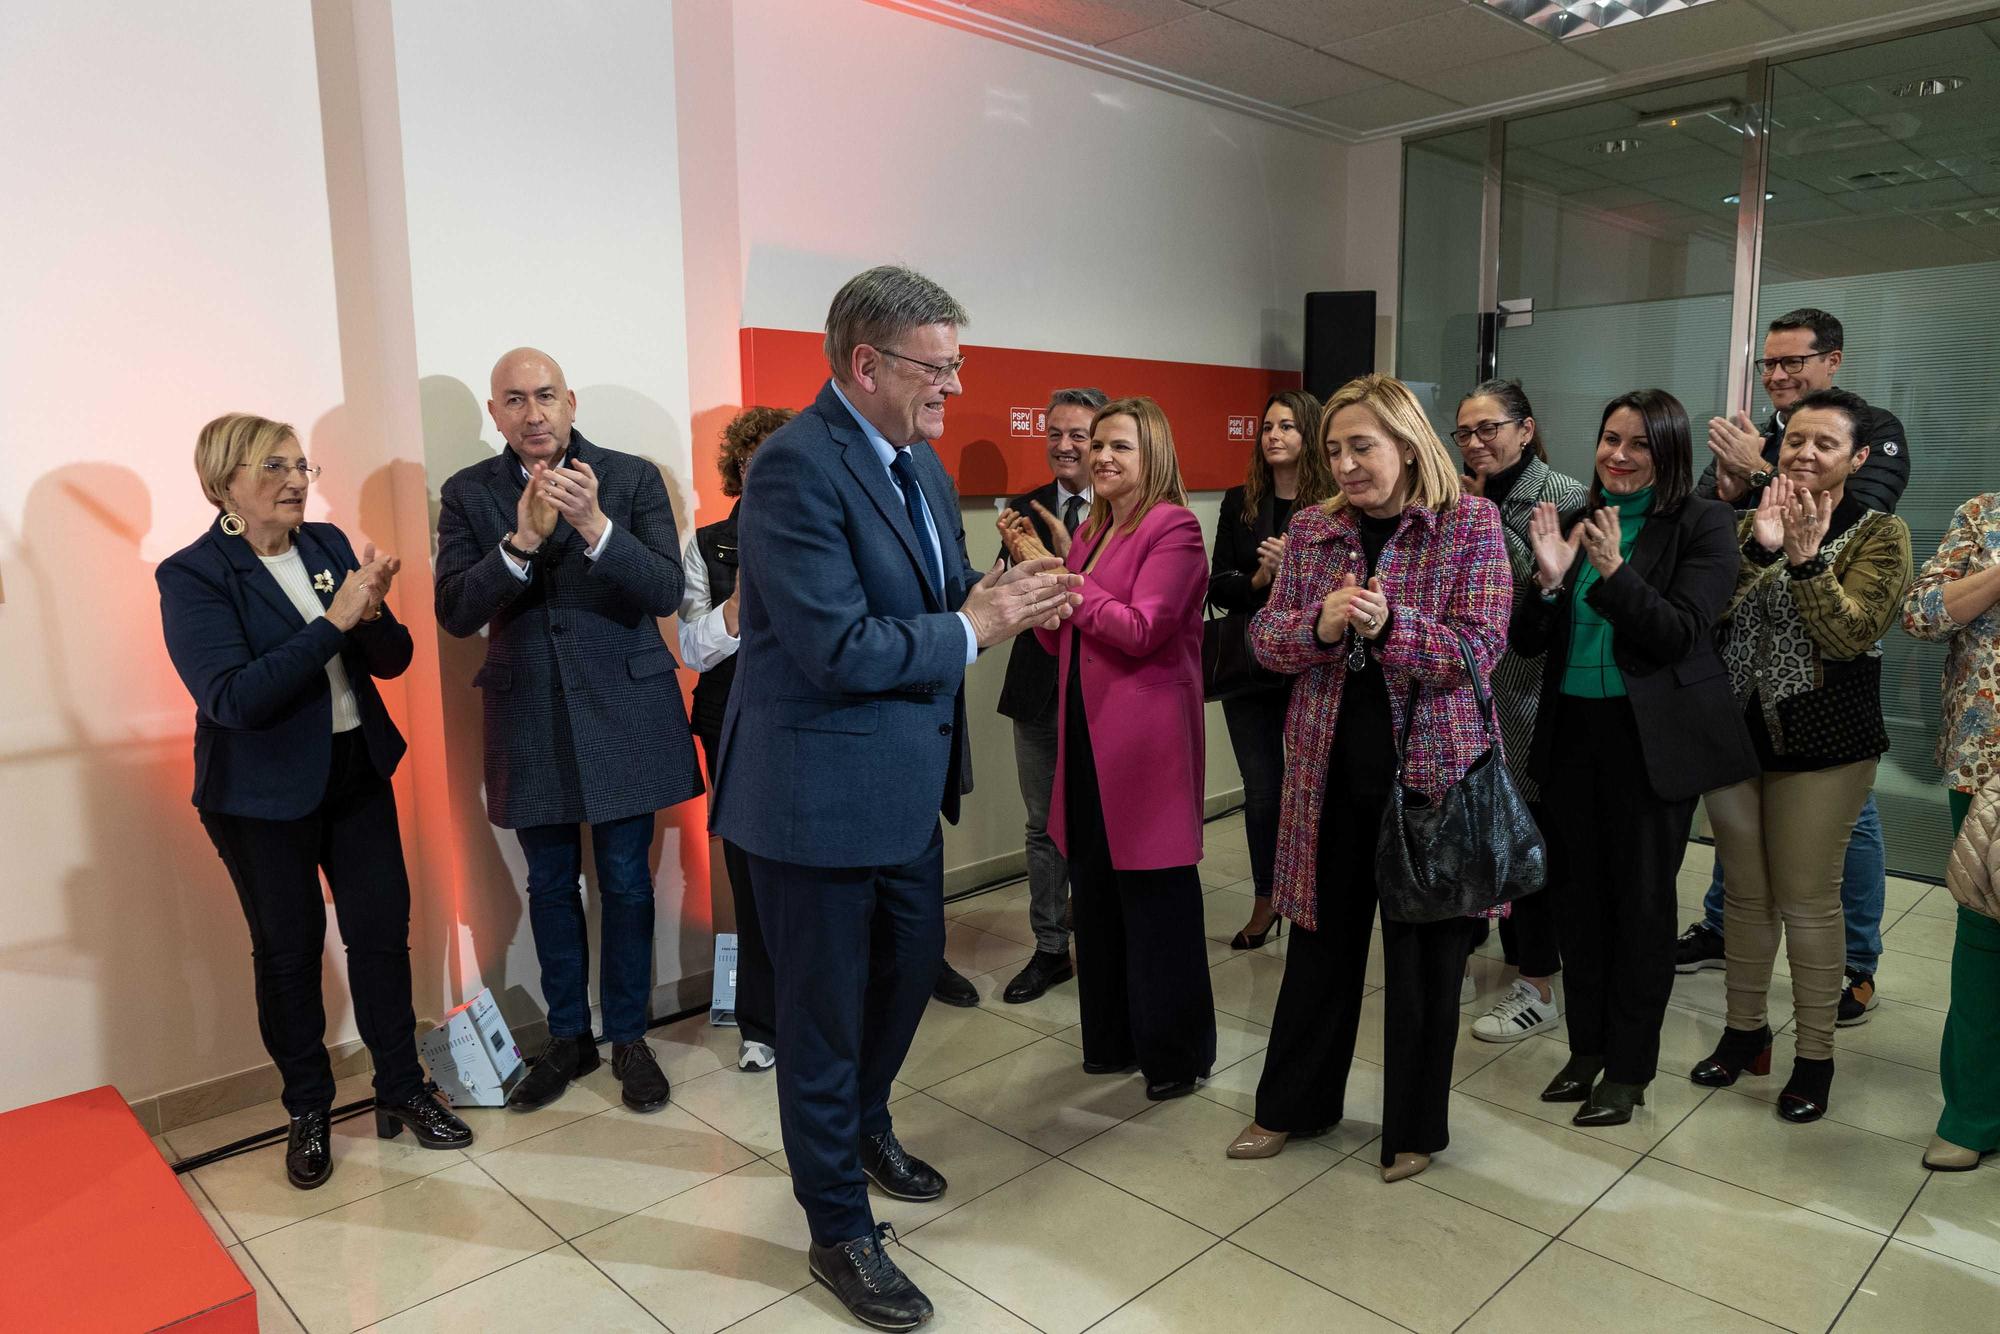 El PSOE inaugura su nueva sede parlamentaria en Alicante